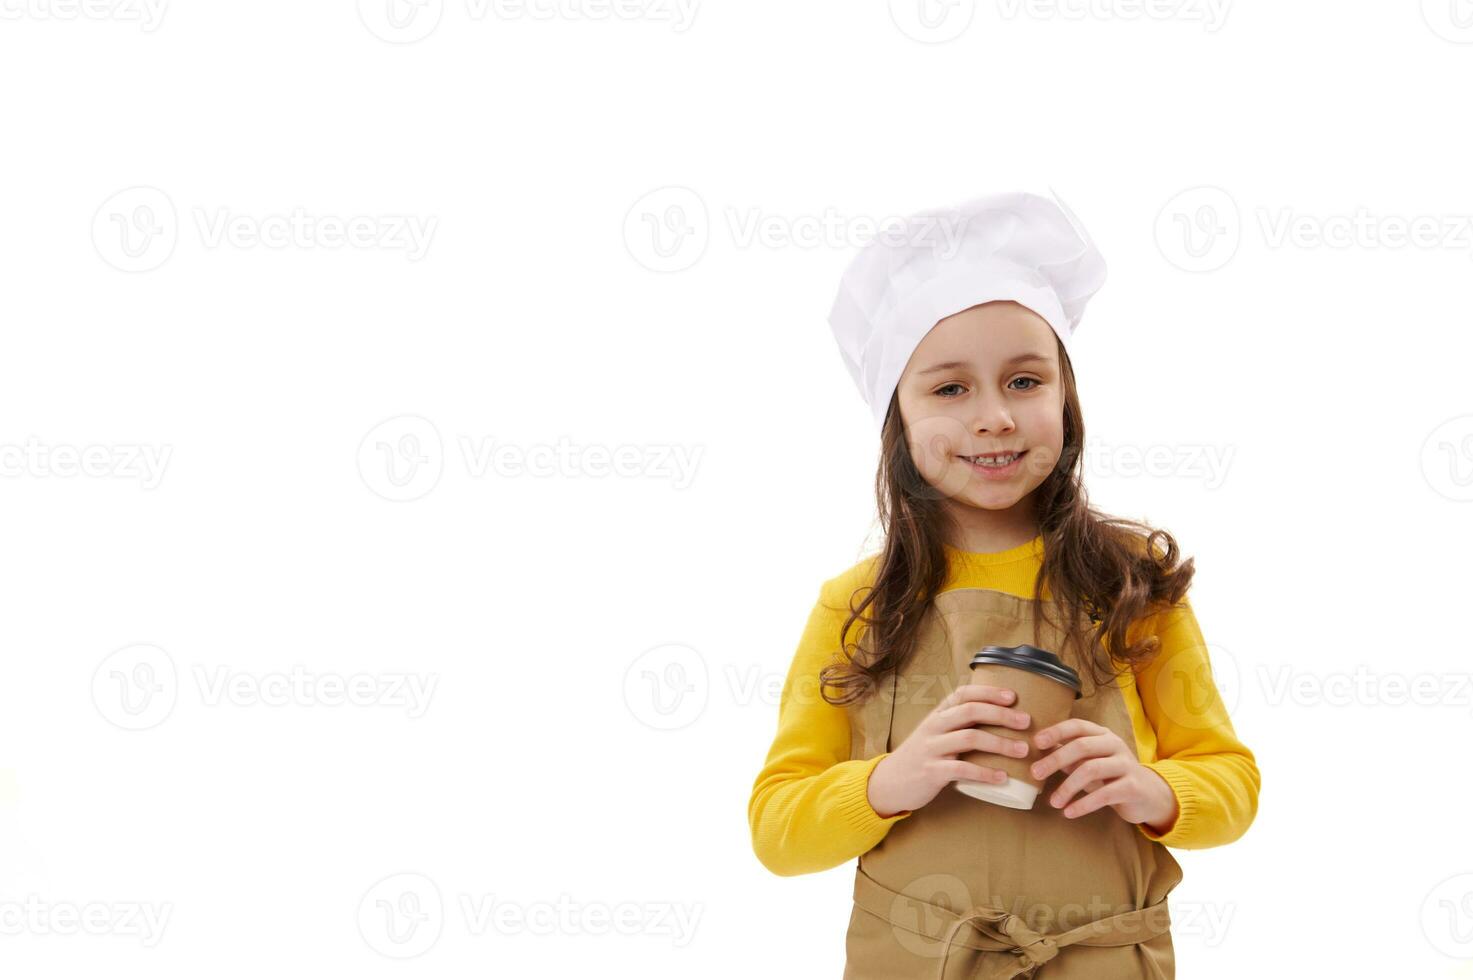 adorable souriant peu enfant fille serveuse dans du chef chapeau et tablier, en portant une à emporter chaud boisson dans recyclable papier tasse photo